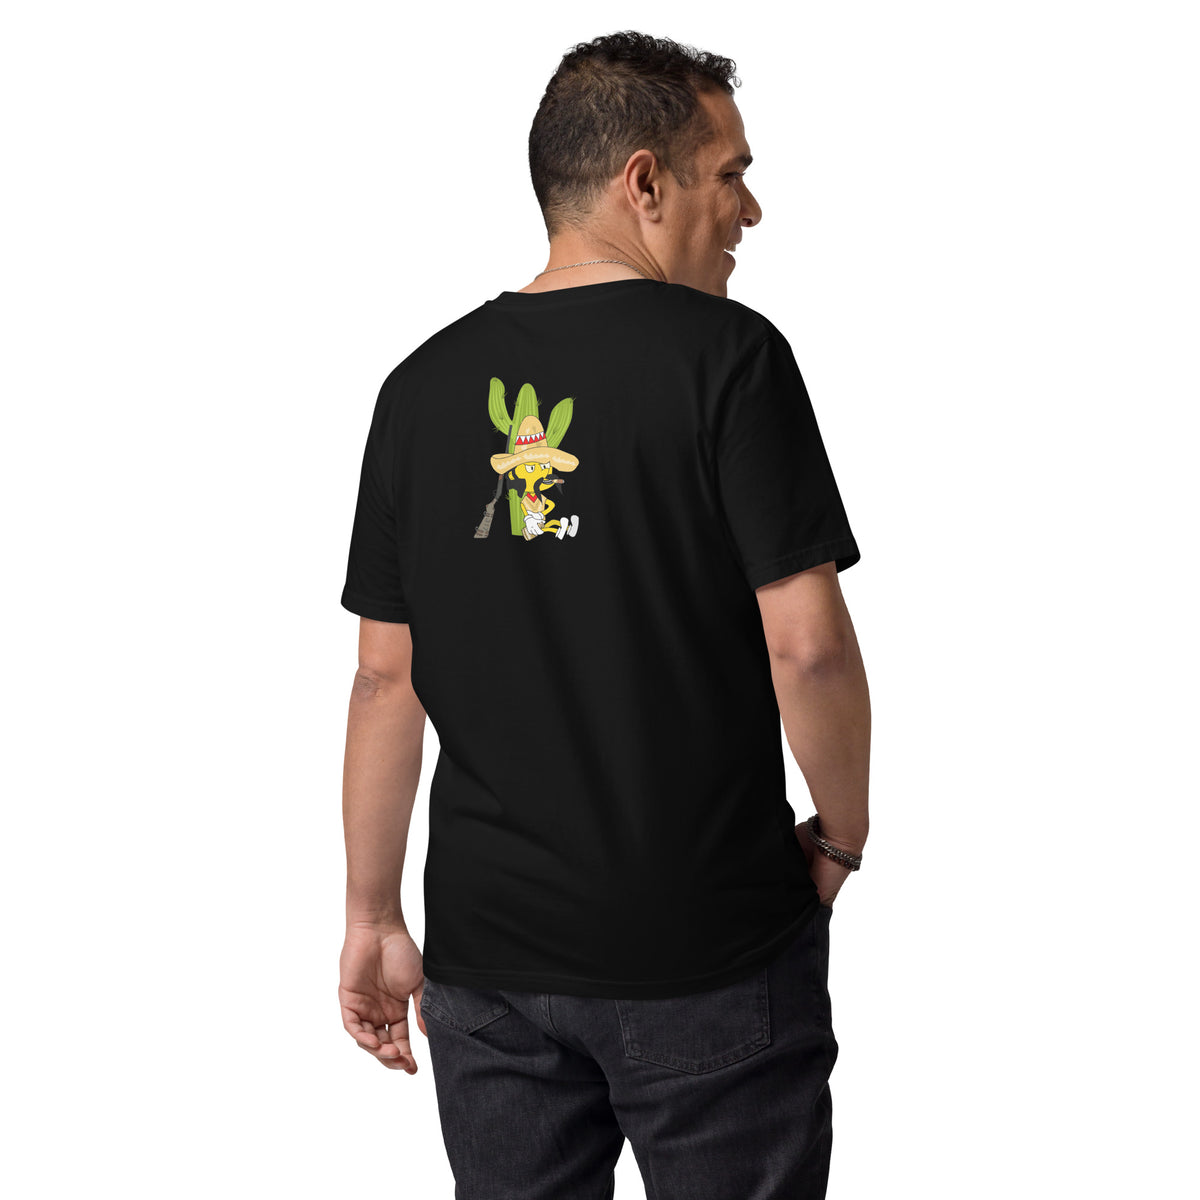 keywalker - Herren-T-Shirt aus Bio-Baumwolle mit Druck